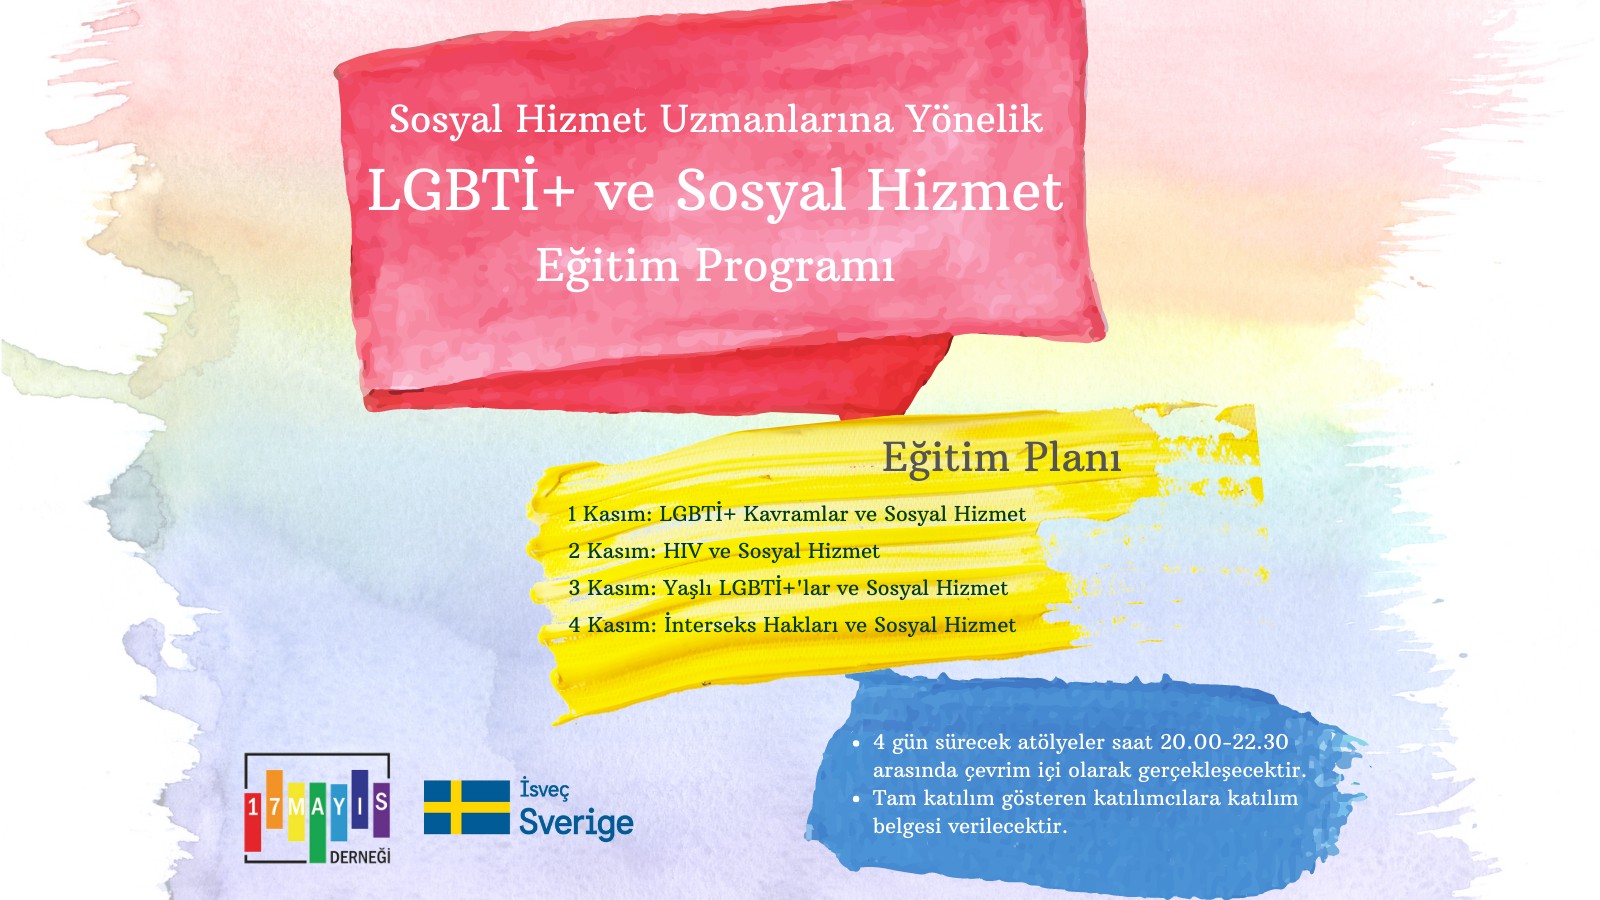 17 Mayıs’ın LGBTİ+ ve Sosyal Hizmet Eğitimi’ne kayıtlar başladı Kaos GL - LGBTİ+ Haber Portalı